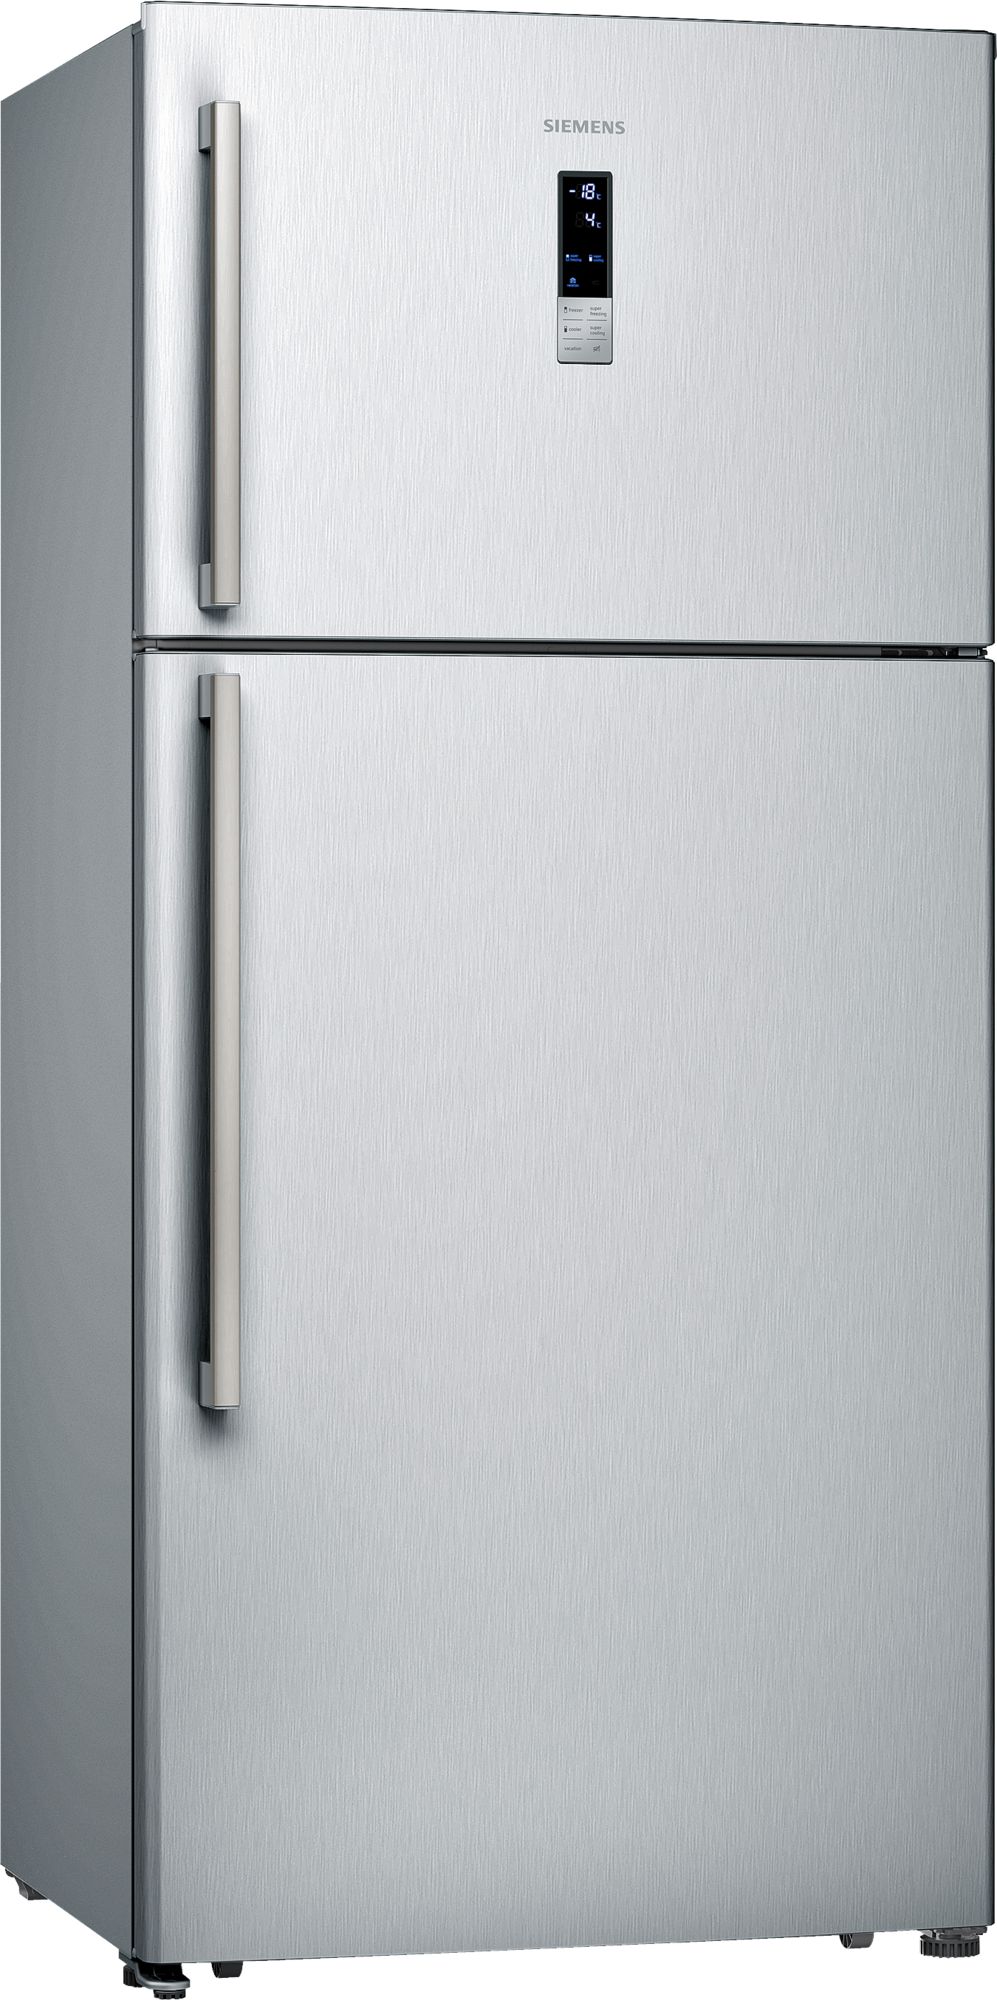 iQ300 Üstten Donduruculu Buzdolabı 175.6 x 79 cm Kolay temizlenebilir Inox